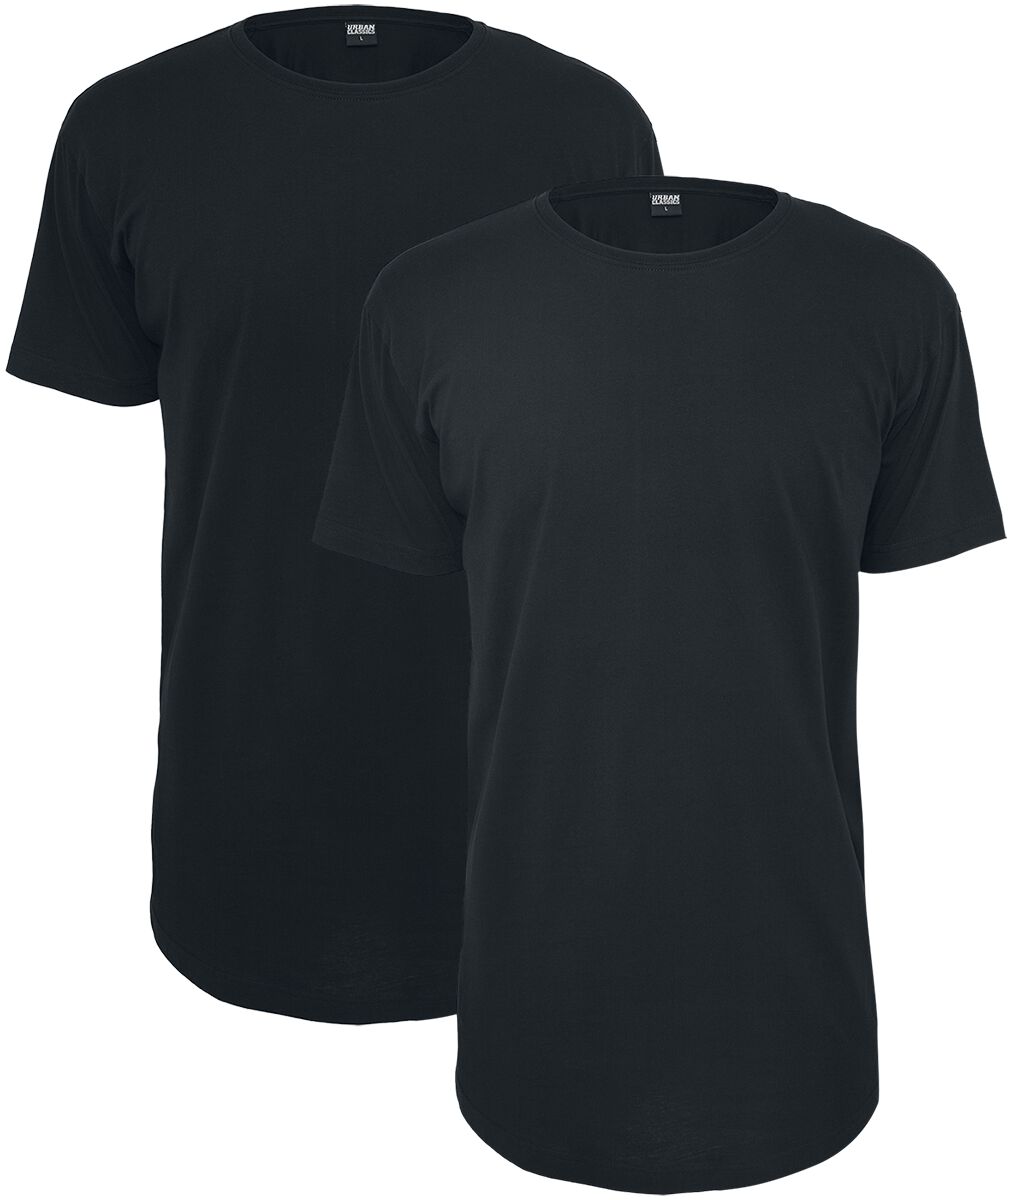 Urban Classics T-Shirt - Pre-Pack Shaped Long Tee 2-Pack - XS bis 5XL - für Männer - Größe S - schwarz